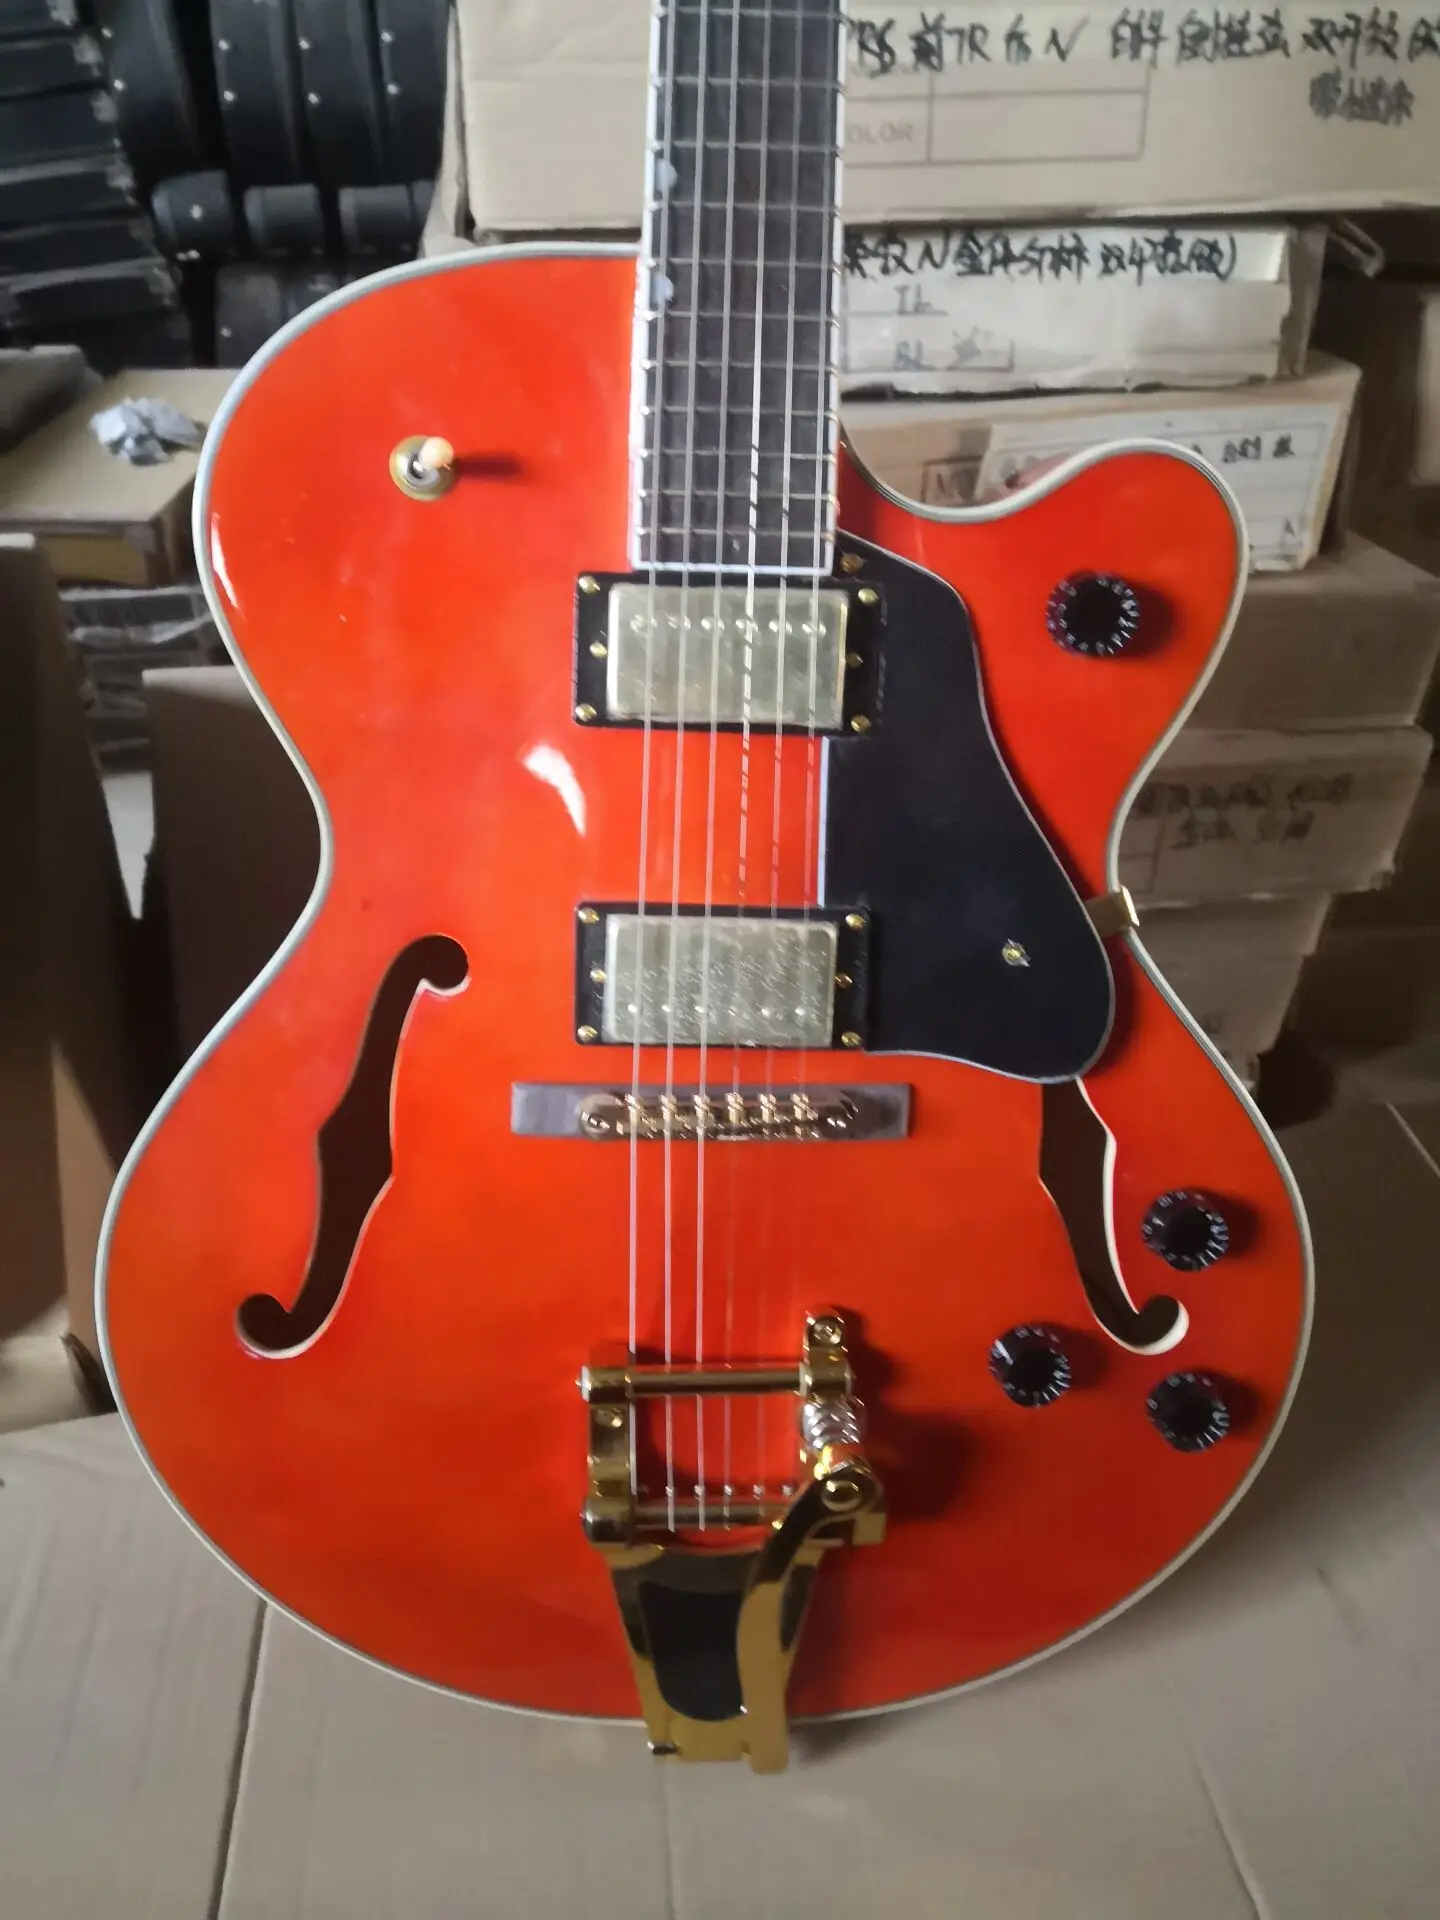 Оригинальная новая оранжевая полуполый корпус джазовая электрическая гитара с Bigsby Tremolo китайская фабрика по производству гитар 67